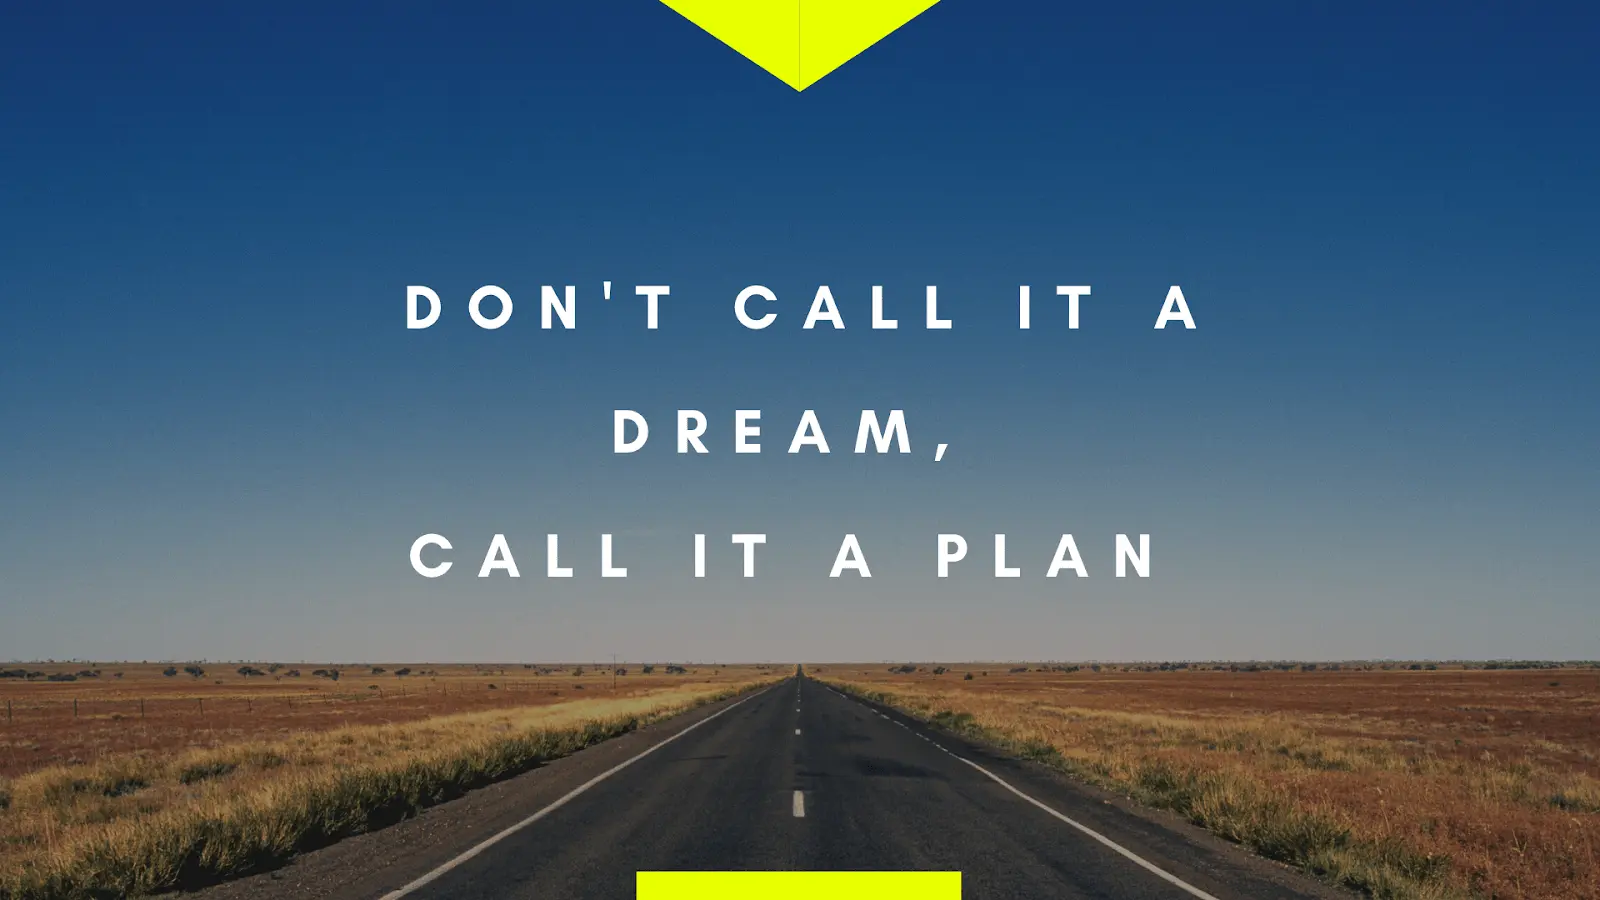 N'appelez pas ça un rêve, appelez ça un plan.